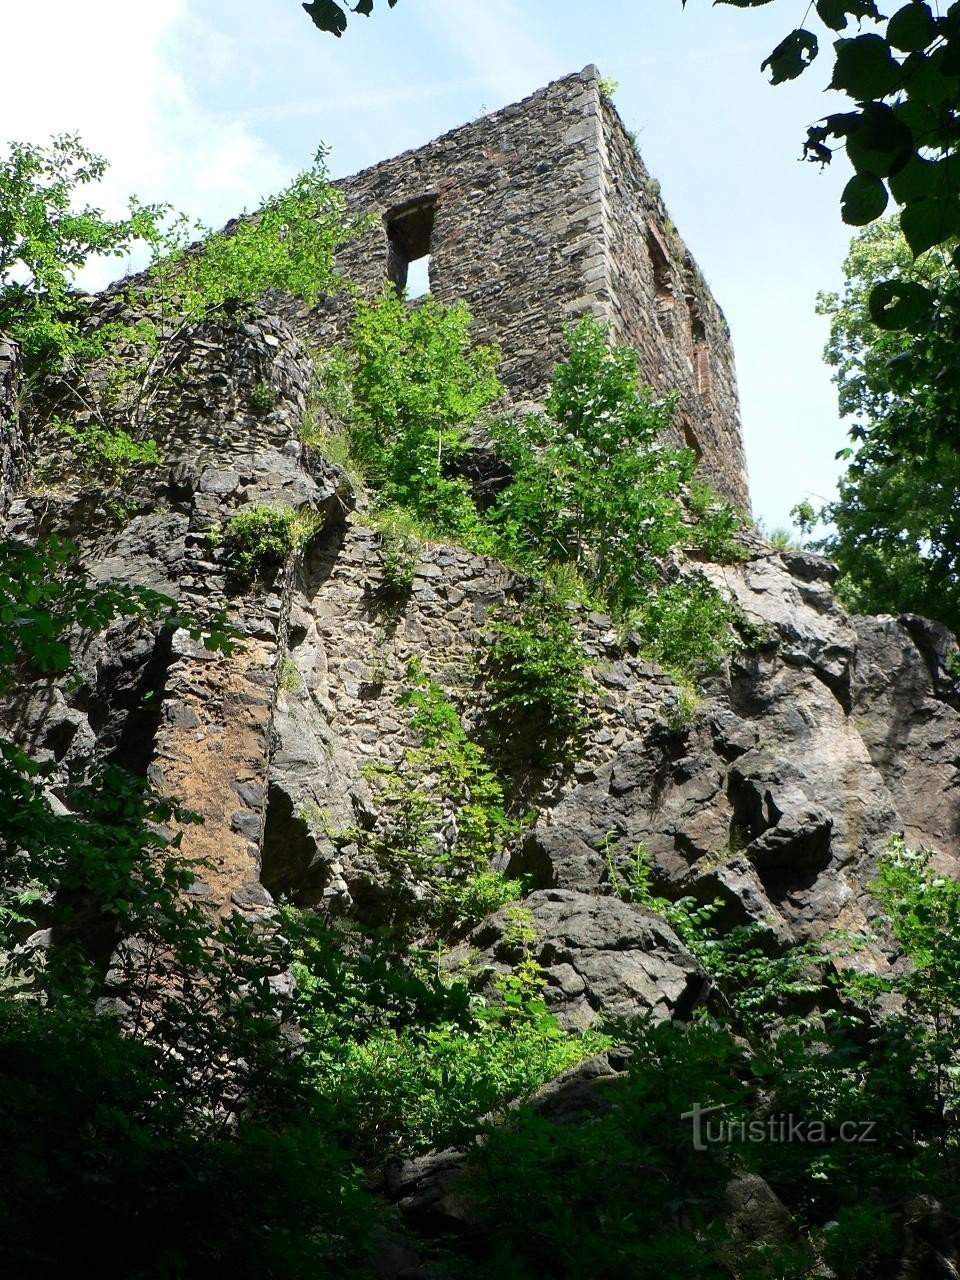 Vlčtejn, from the southwest